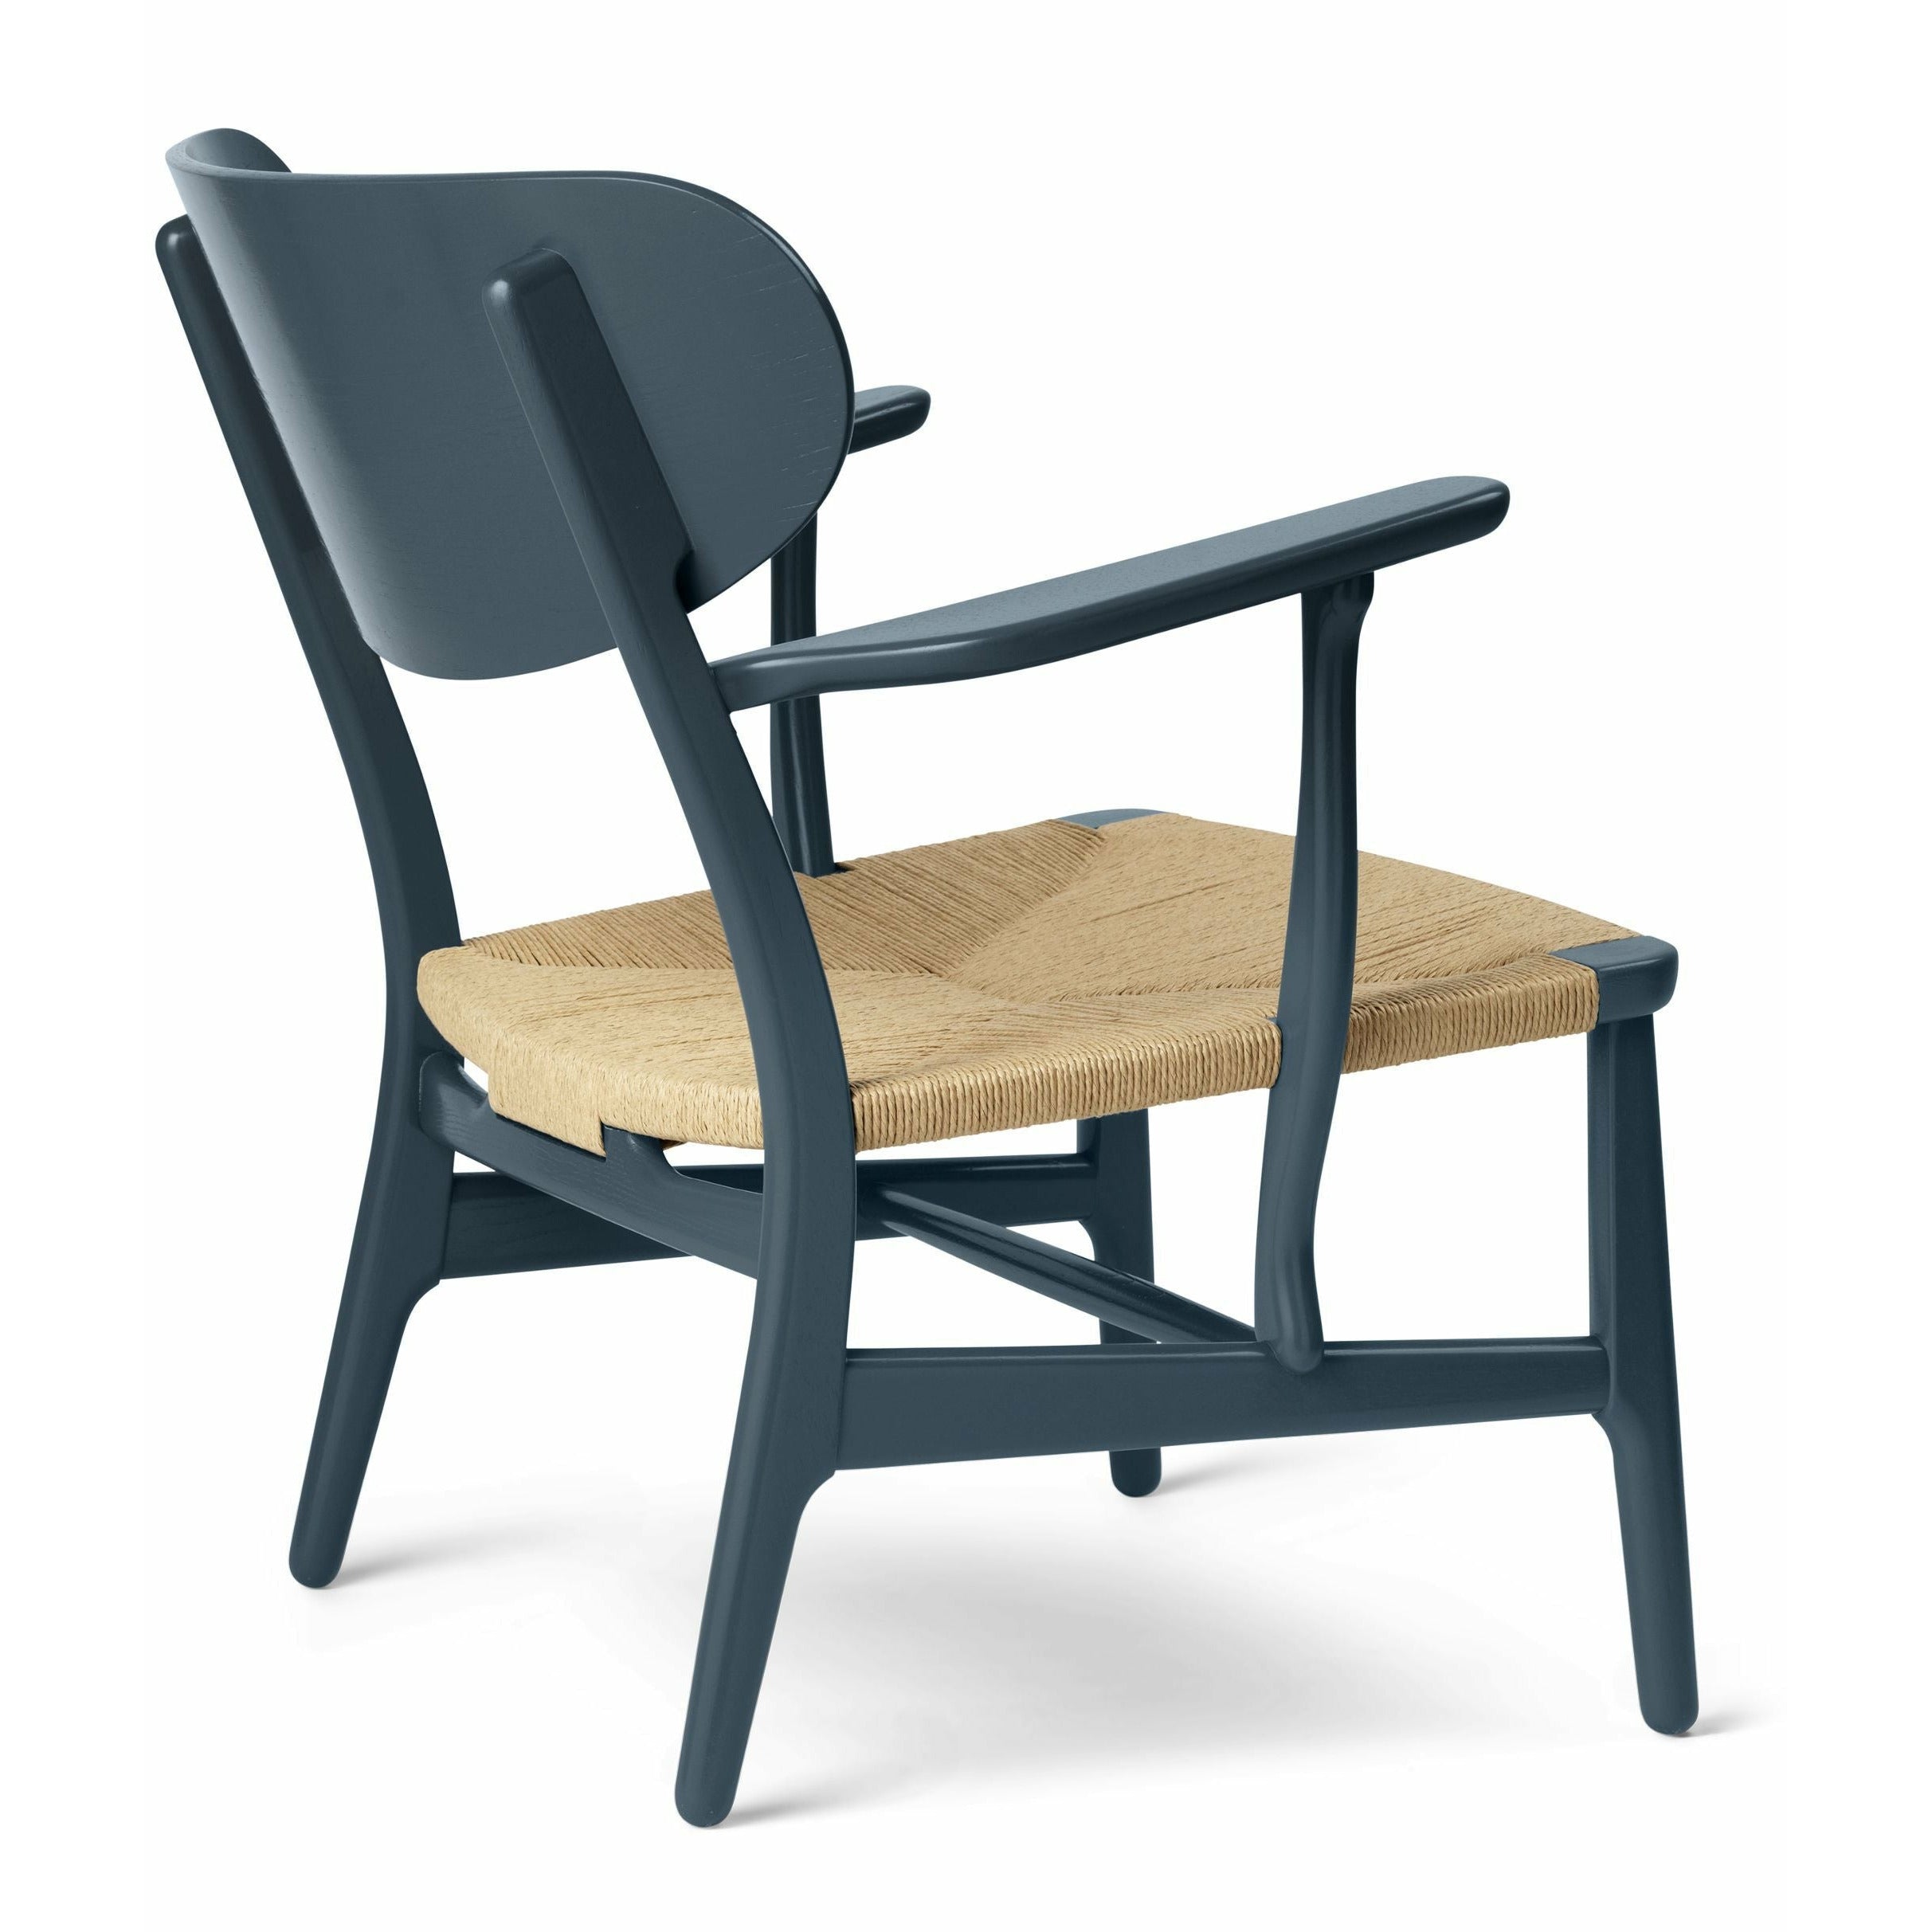 Carl Hansen Ch22 Lounge Chair Oak, North Sea Blue/Natural Cord